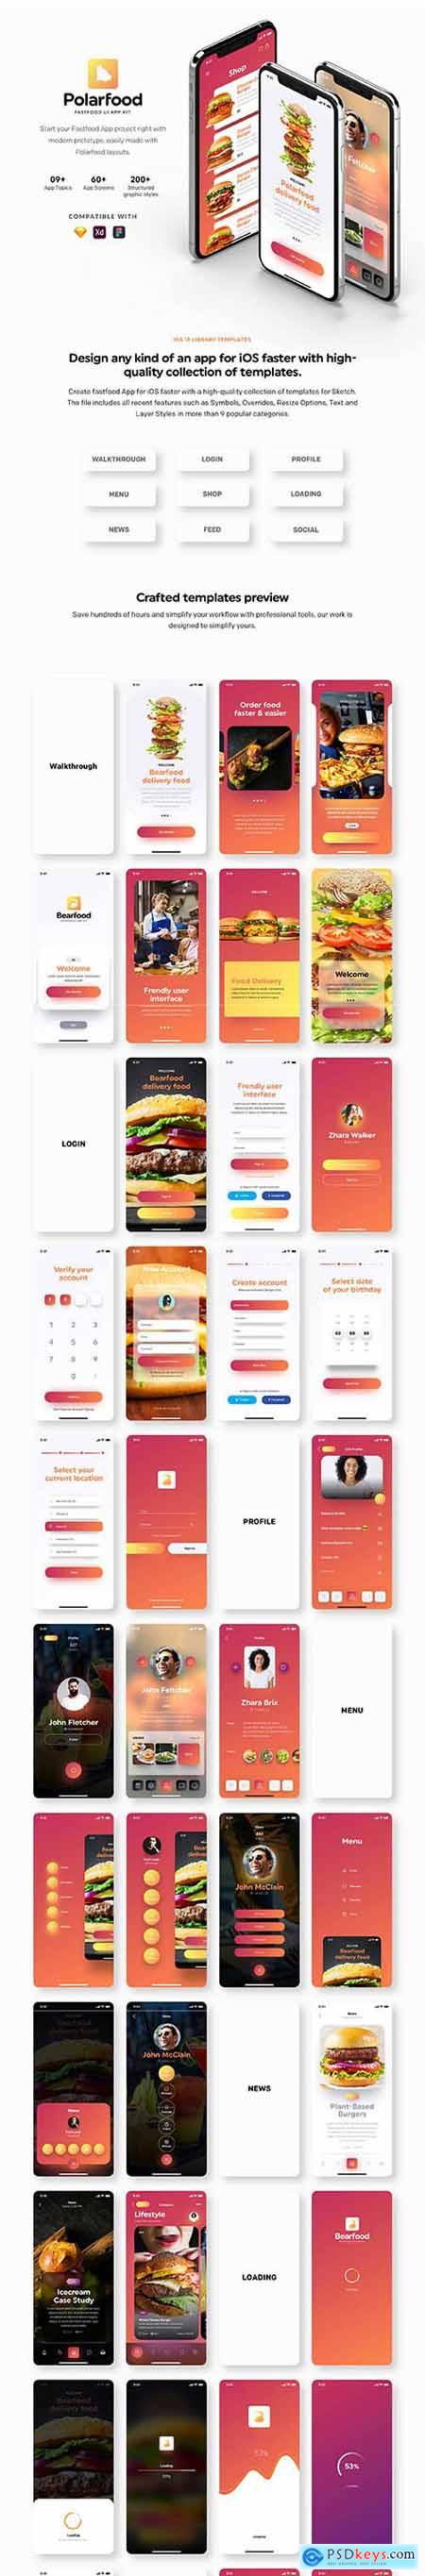 Polarfood - Fast-food app kit